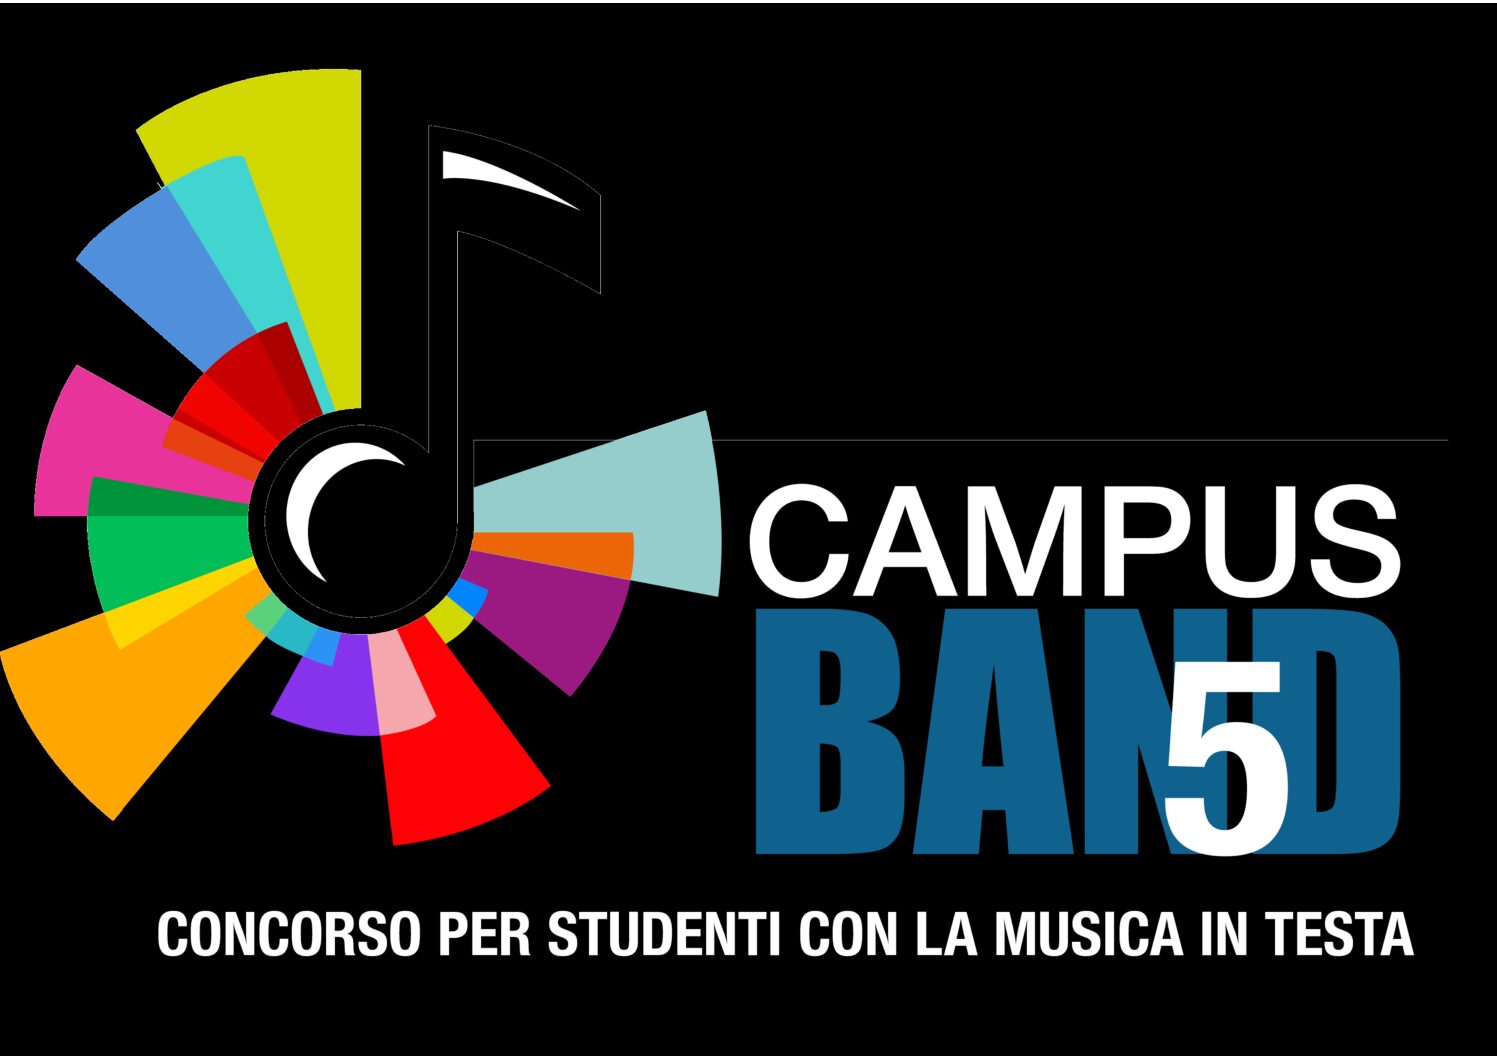 “Campusband musica & matematica”